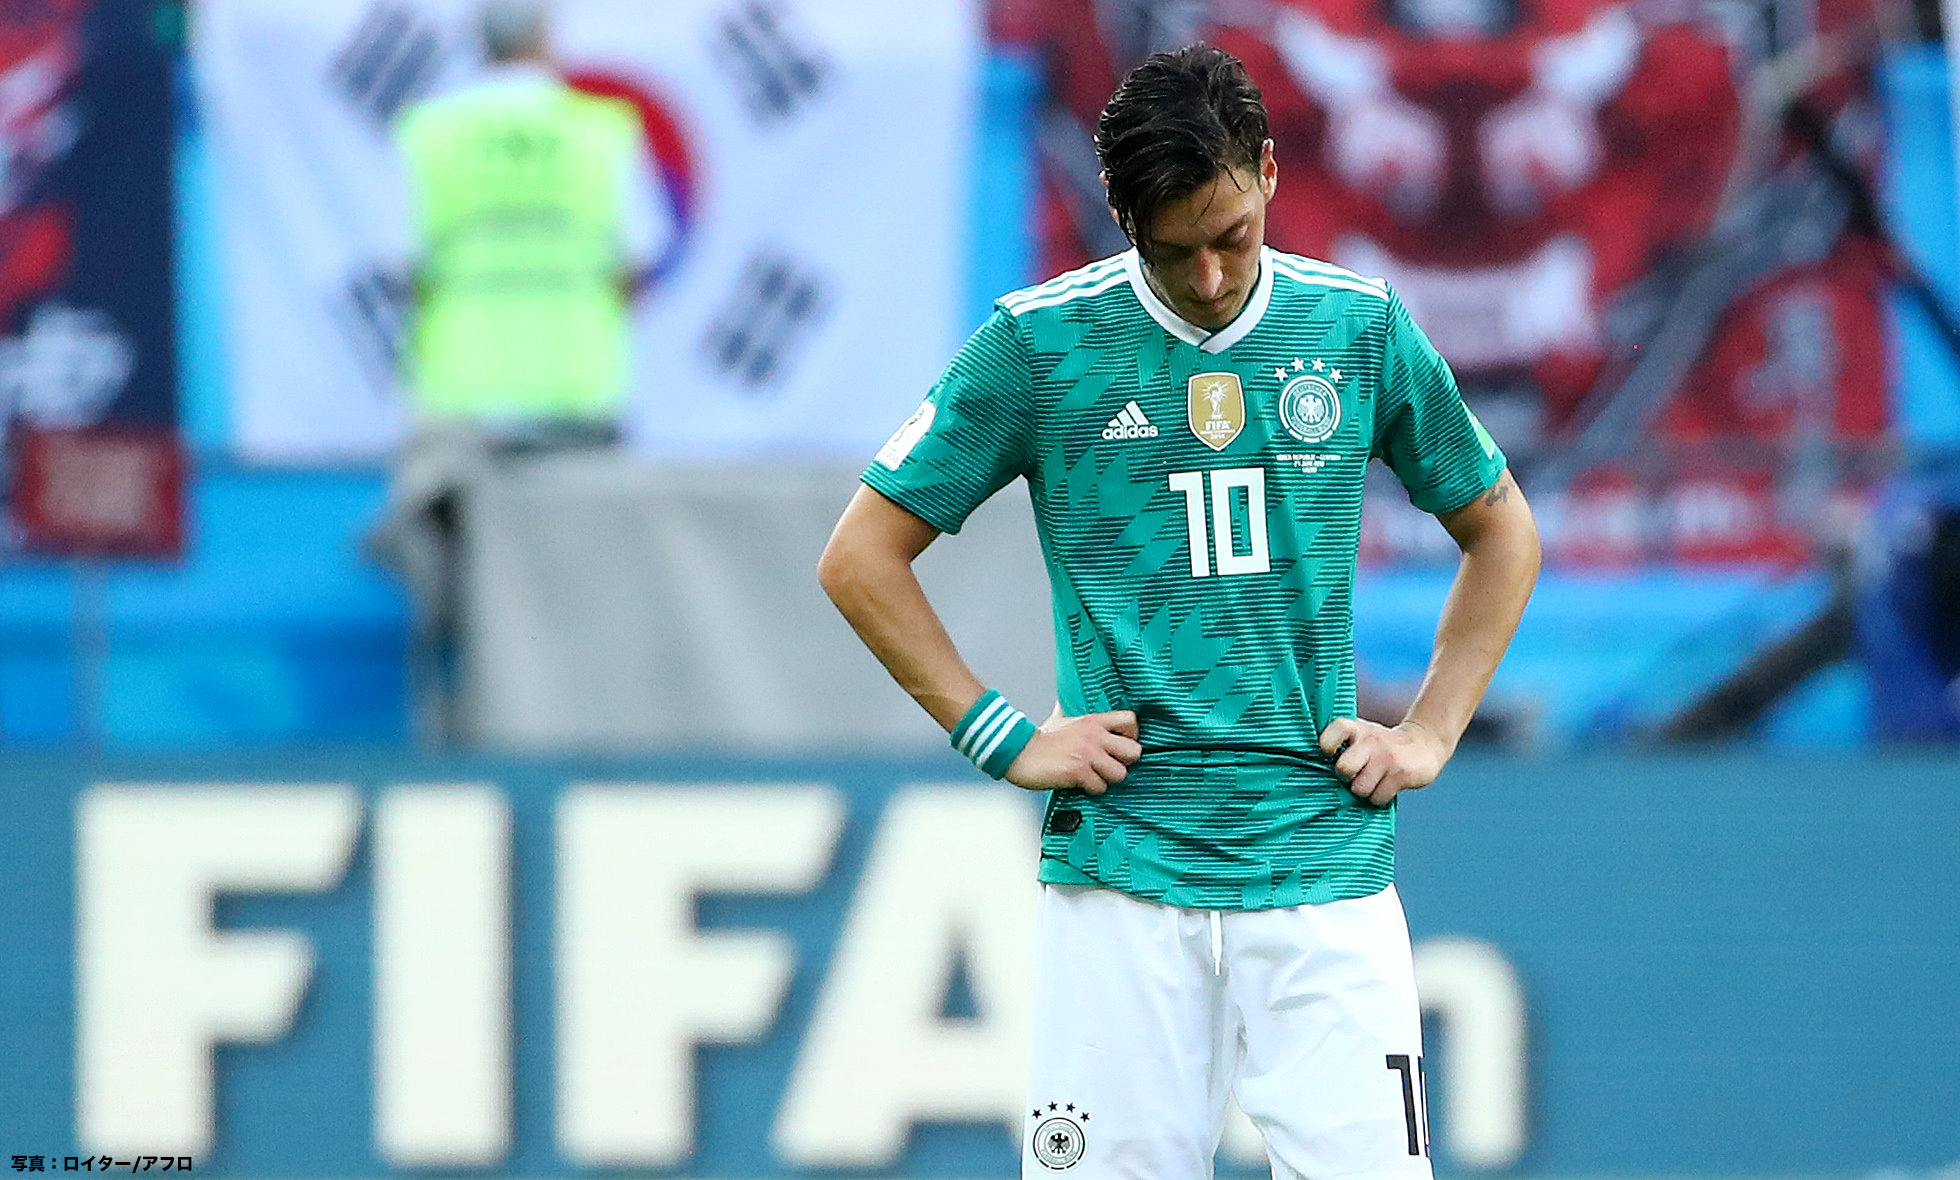 前回王者 ドイツが史上初の1次リーグ敗退 その一因と言われるエジルの不振 サッカー フットサルのコラム J Sportsコラム ニュース